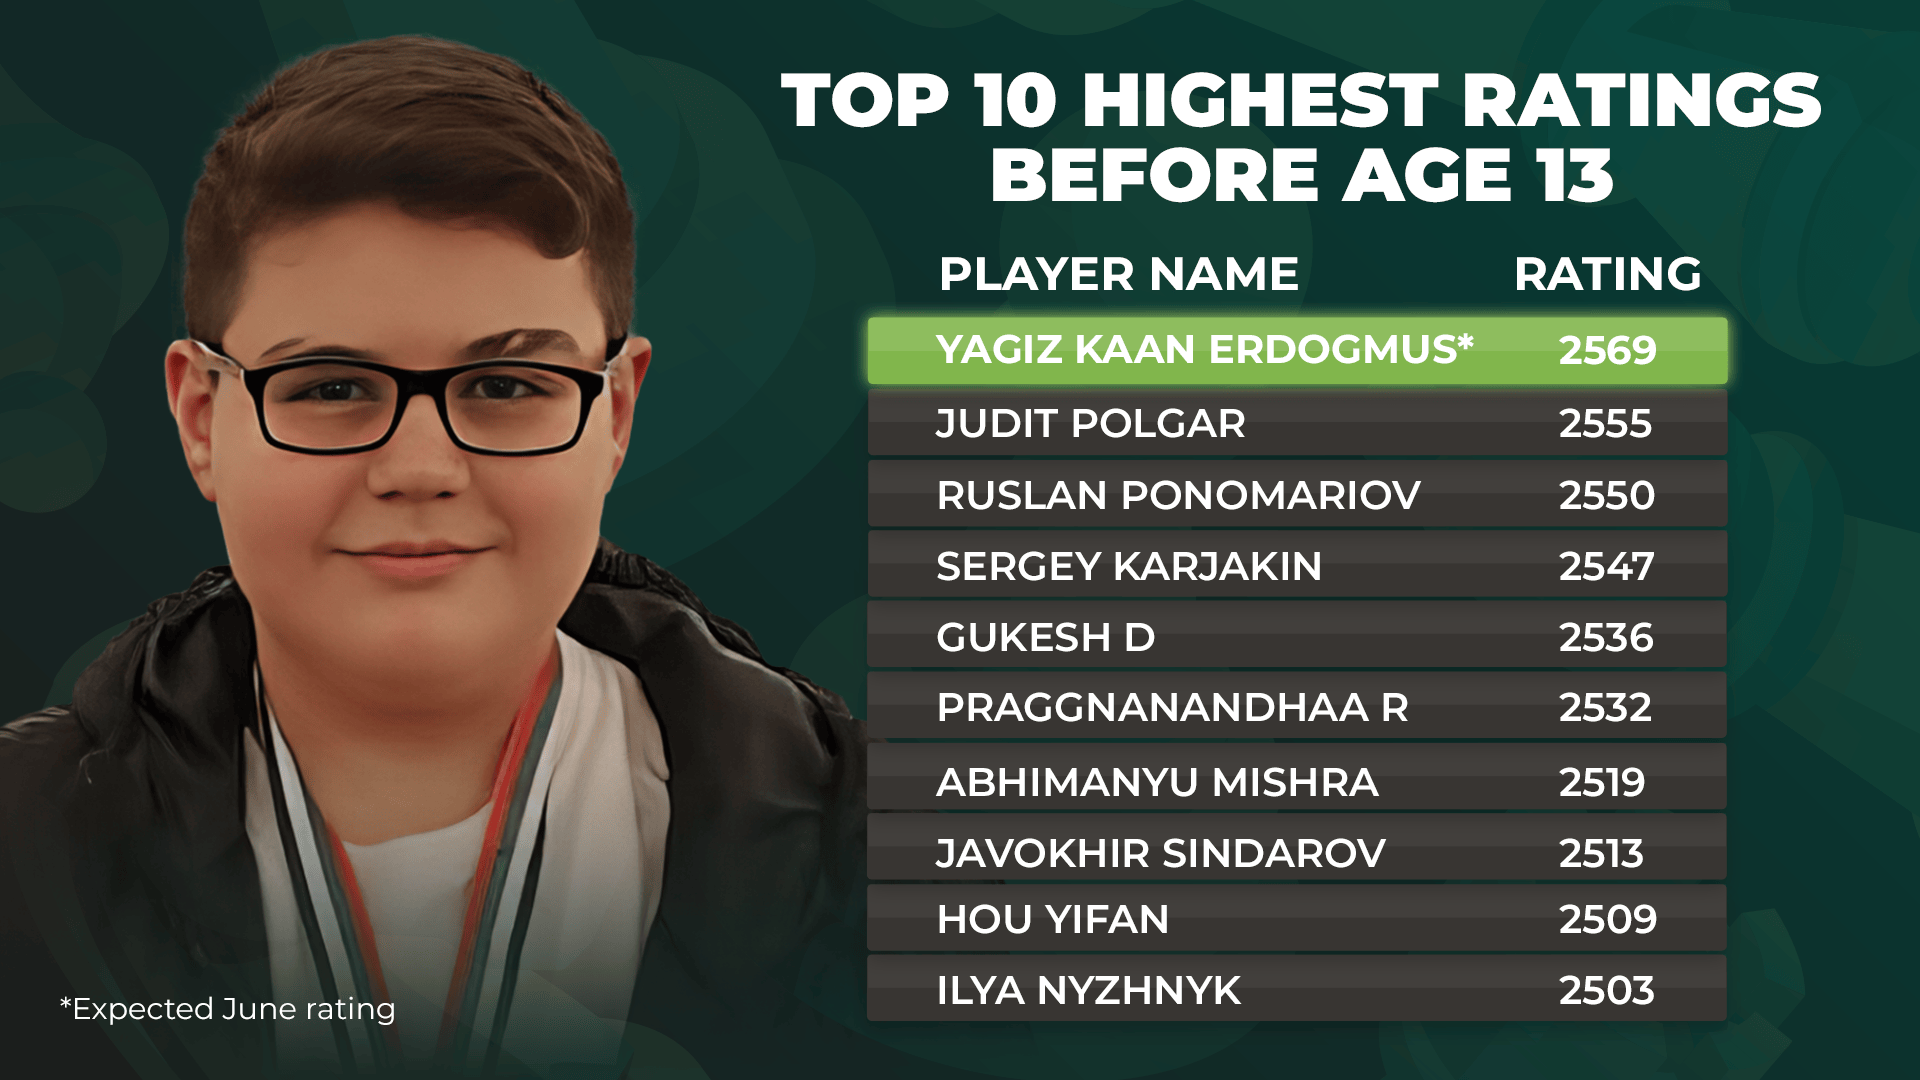 埃尔多格穆斯目前位居 13 岁以下最高评分棋手榜首。